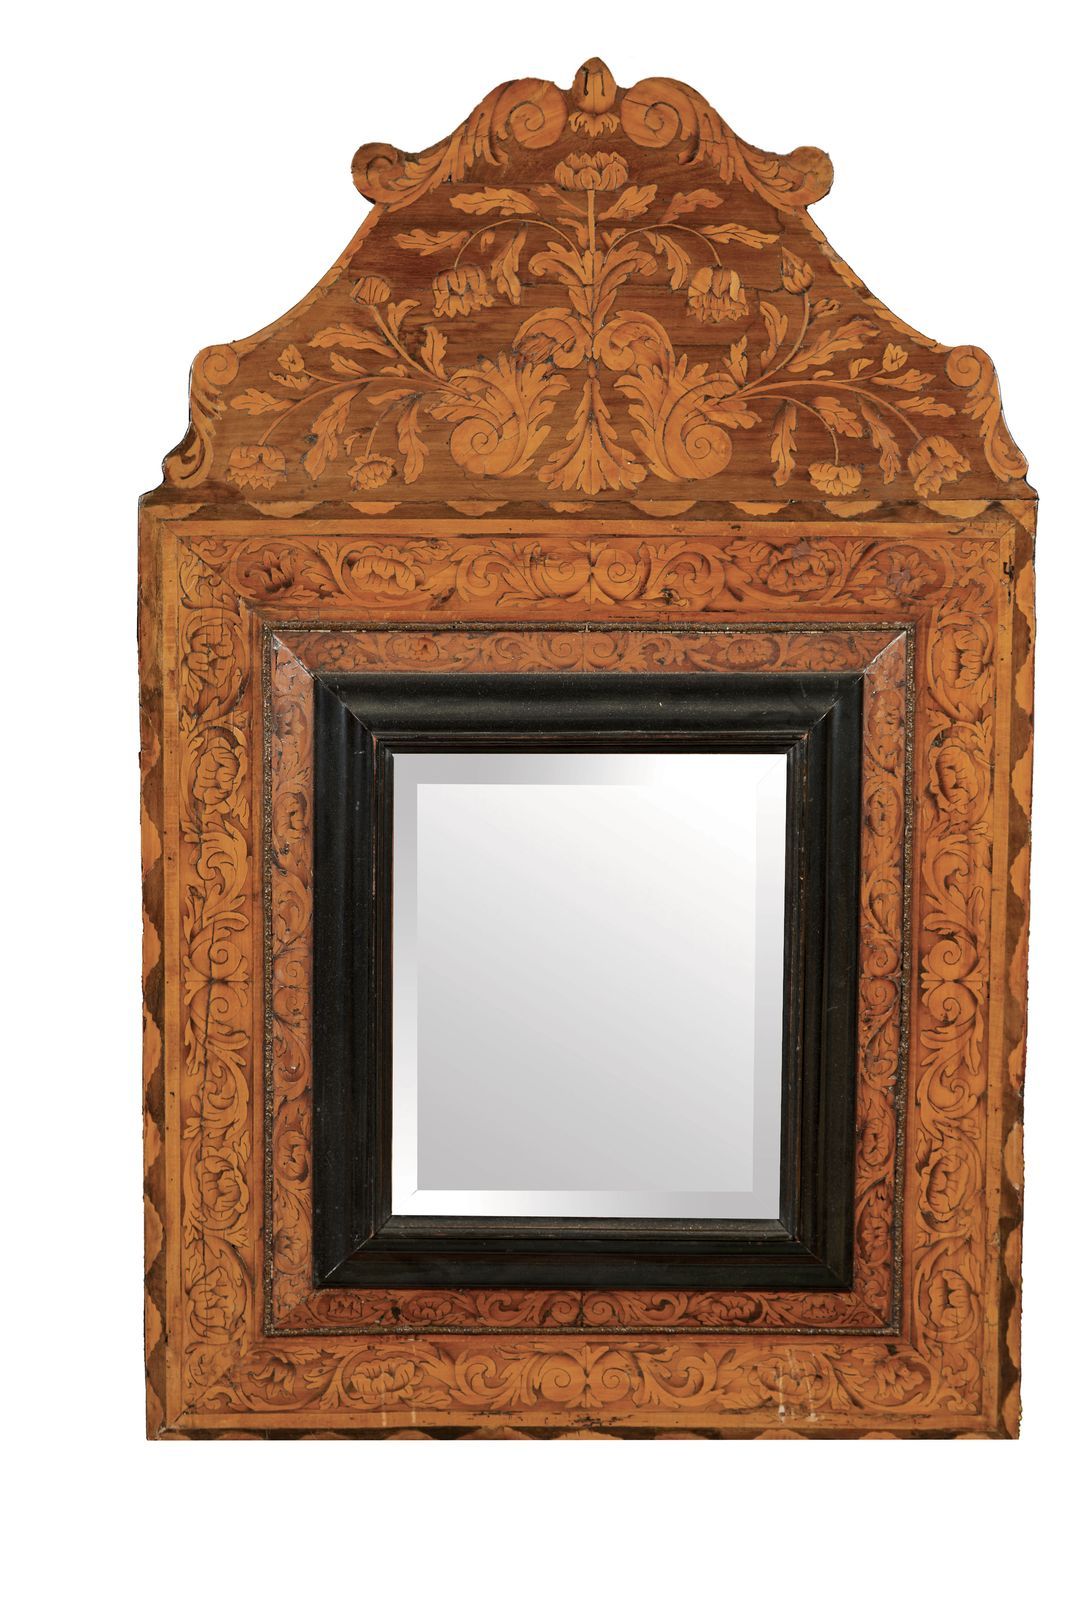 Null 134-胡桃木镶嵌的镜子，有卷轴，涡流和着色的木头，在一个铜丝的框架中。

17世纪末，18世纪初。

92 x 58 cm